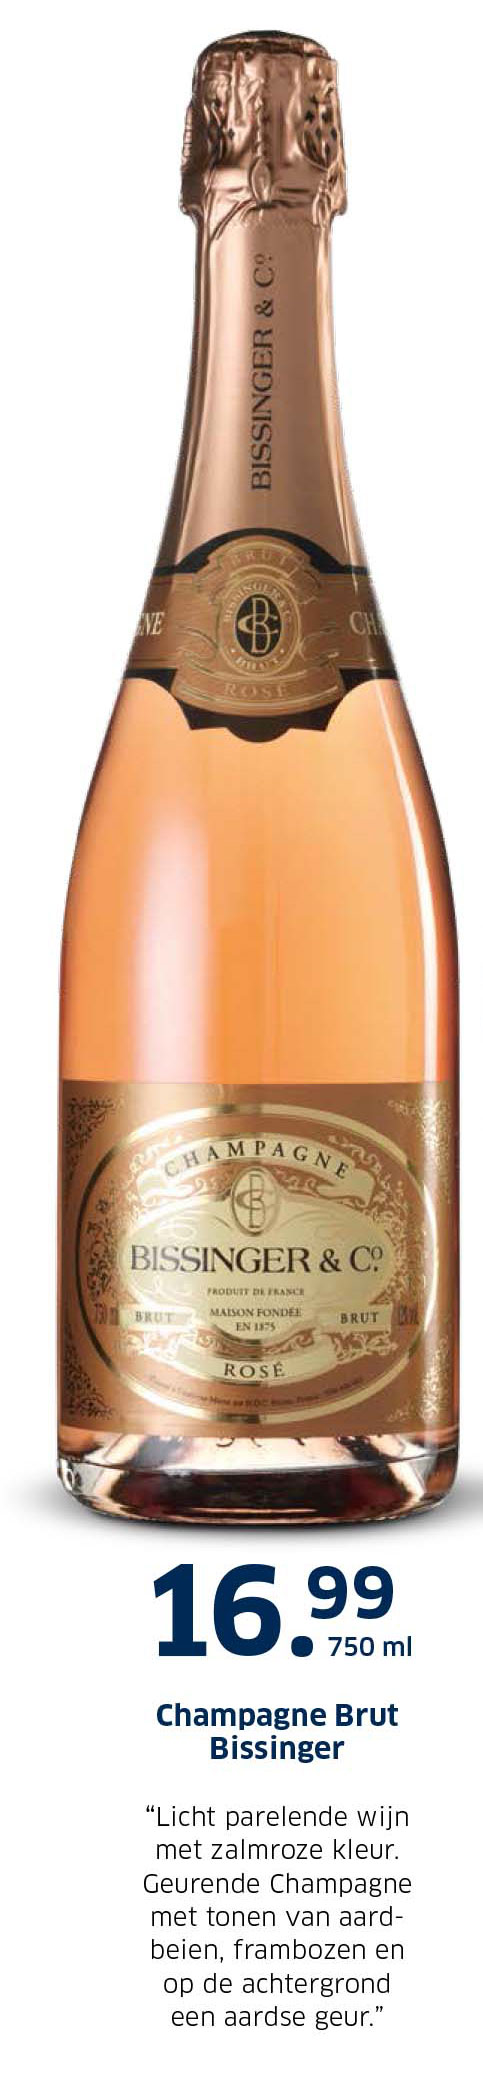 Champagne Brut Bissinger Aanbieding bij Lidl